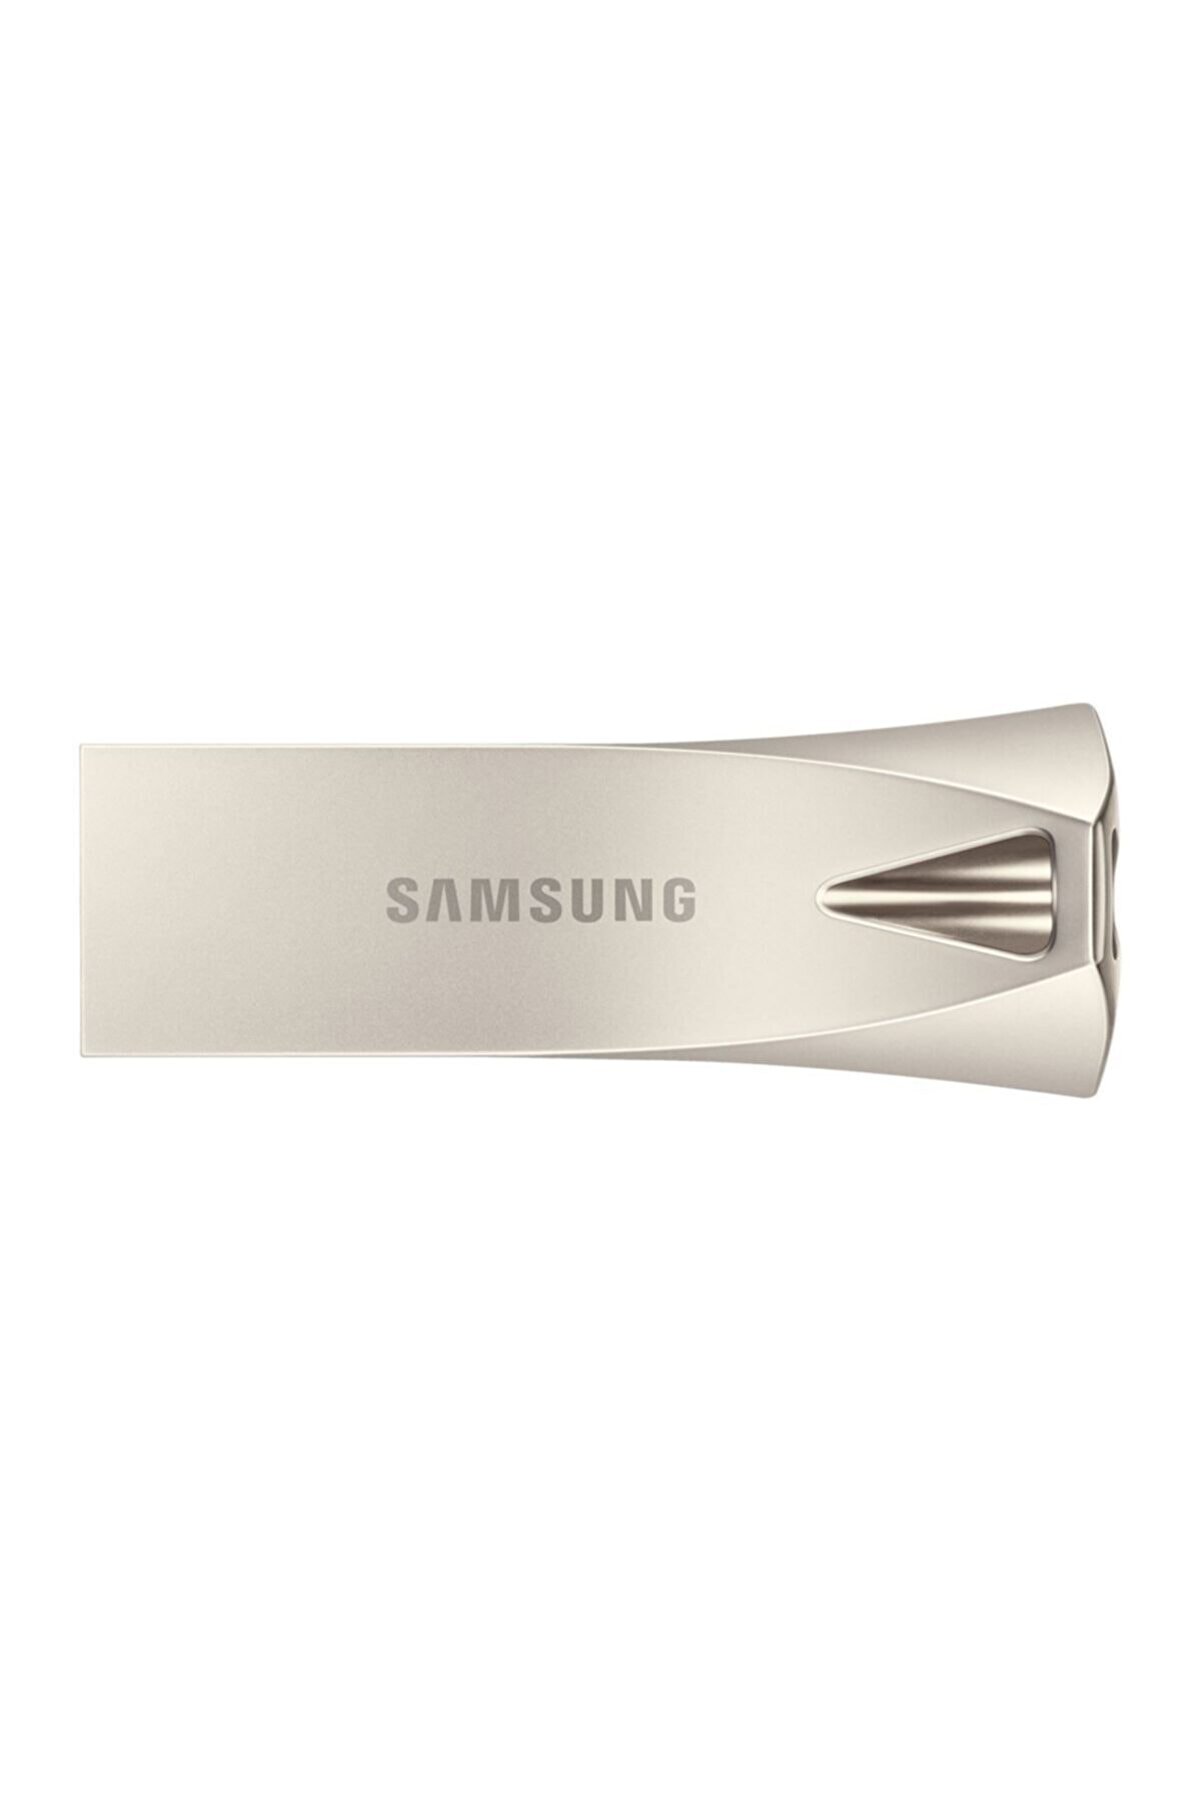 Samsung USB 3.1 Flash Bellek BAR PLUS 32 GB (Gümüş)